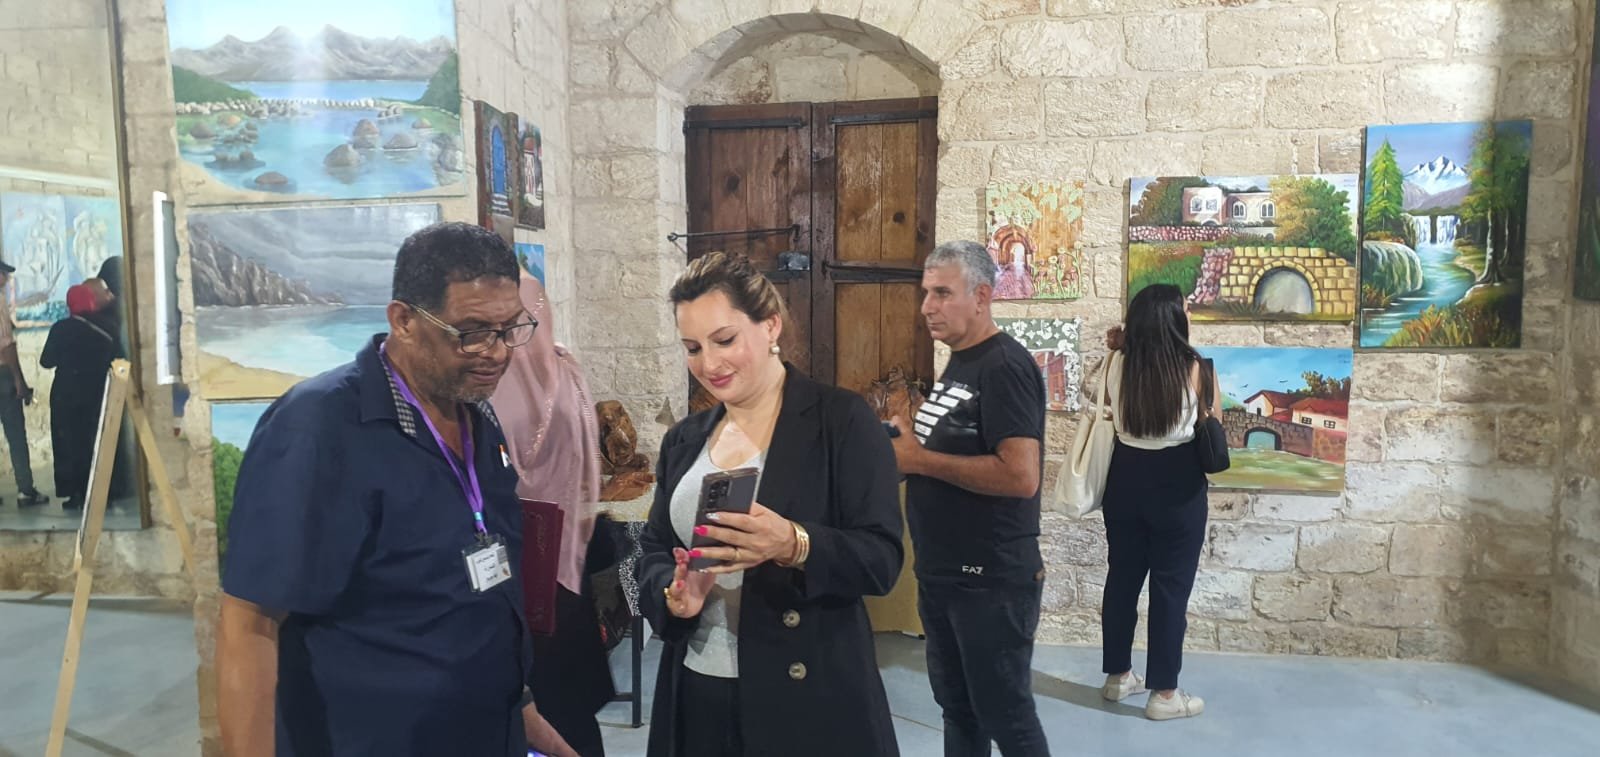 معرض فن تشكيلي "لمسات ابداعية" في جالري انماء في الناصرة-13